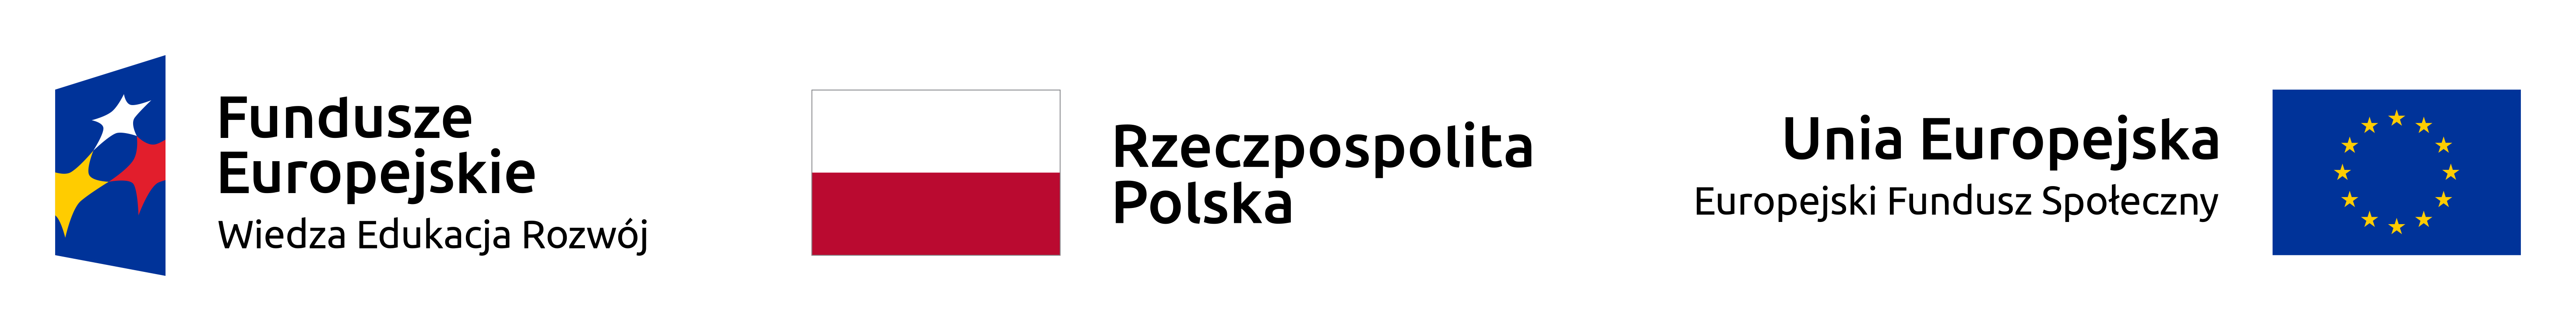 Logo Fundusze Europejskie Wiedza, Edukacja, Rozwój. Flaga Rzeczpospolitej Polskiej. Flaga Unii Europejskiej, Europejski Fundusz Społeczny.